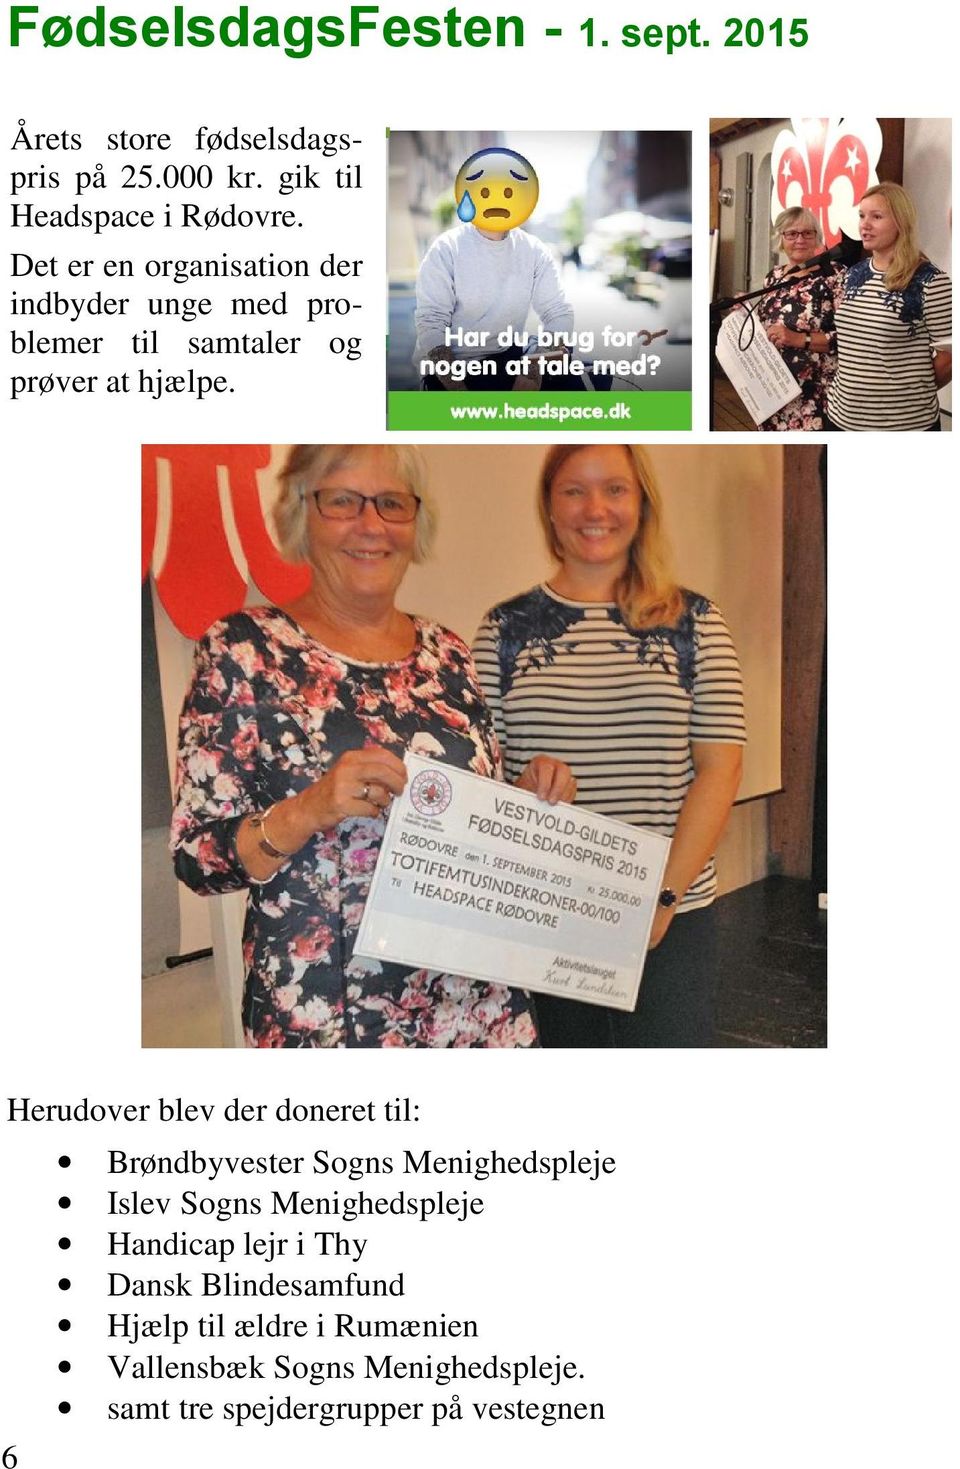 Herudover blev der doneret til: Brøndbyvester Sogns Menighedspleje Islev Sogns Menighedspleje Handicap